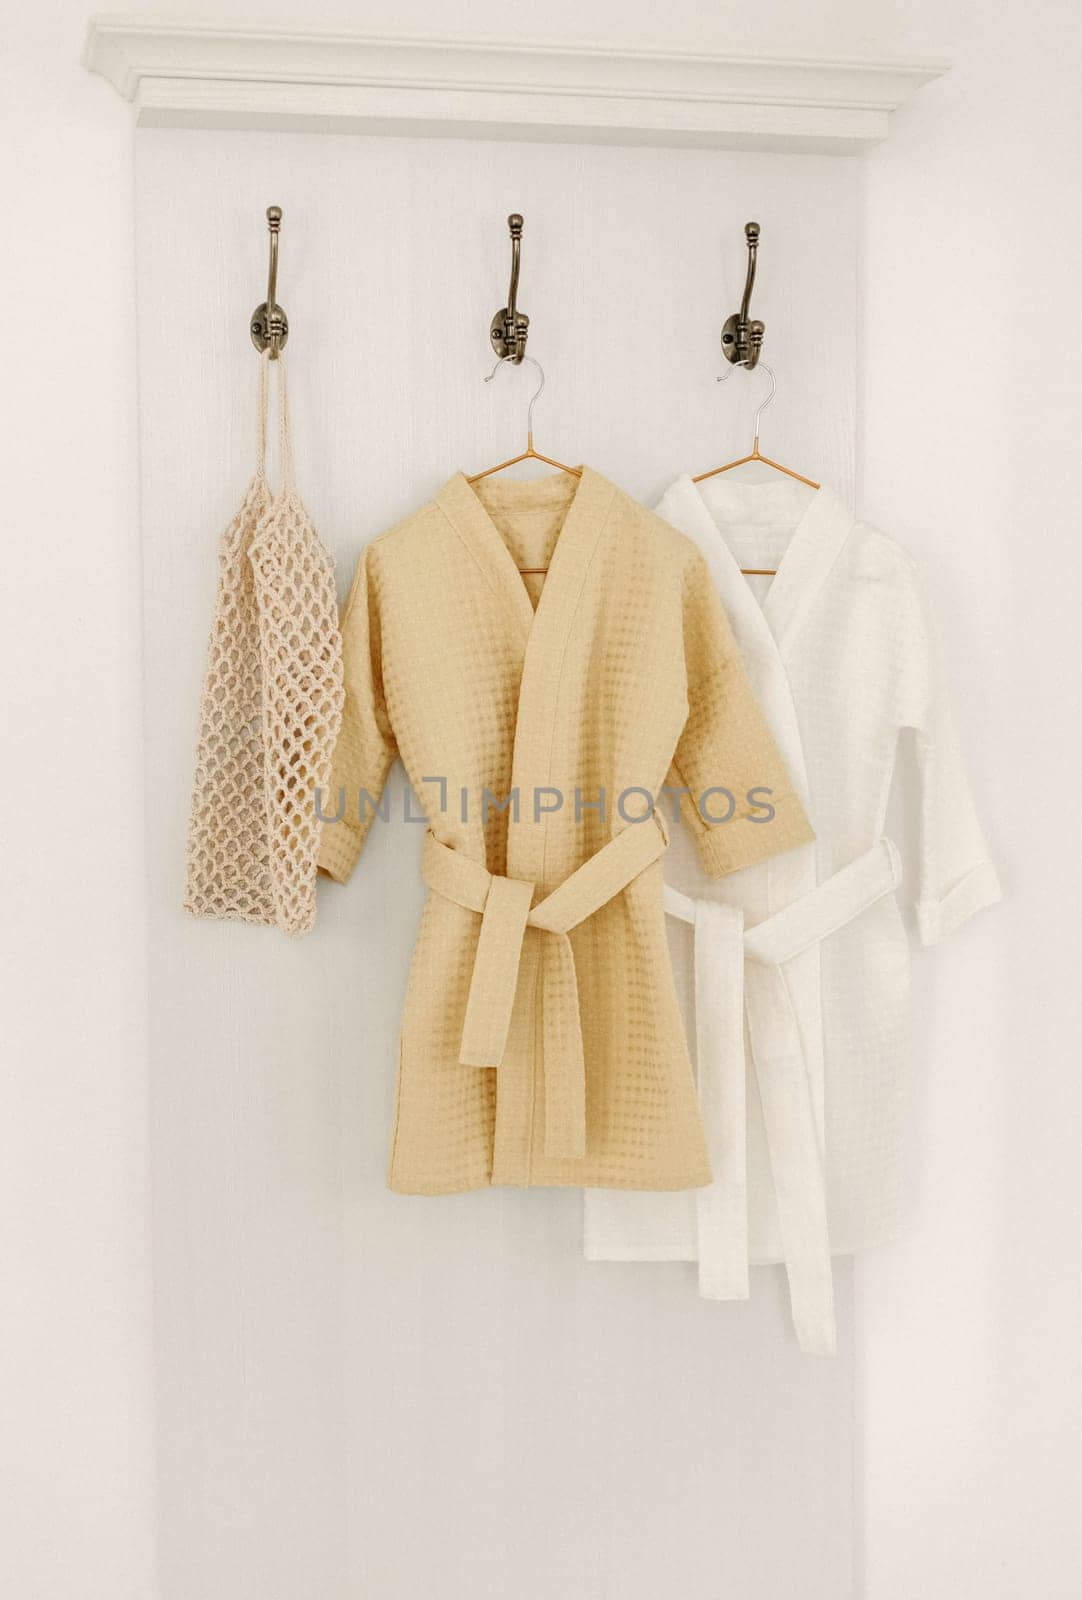 Linen bathrobes hang on a hanger in the bathroom by Sd28DimoN_1976